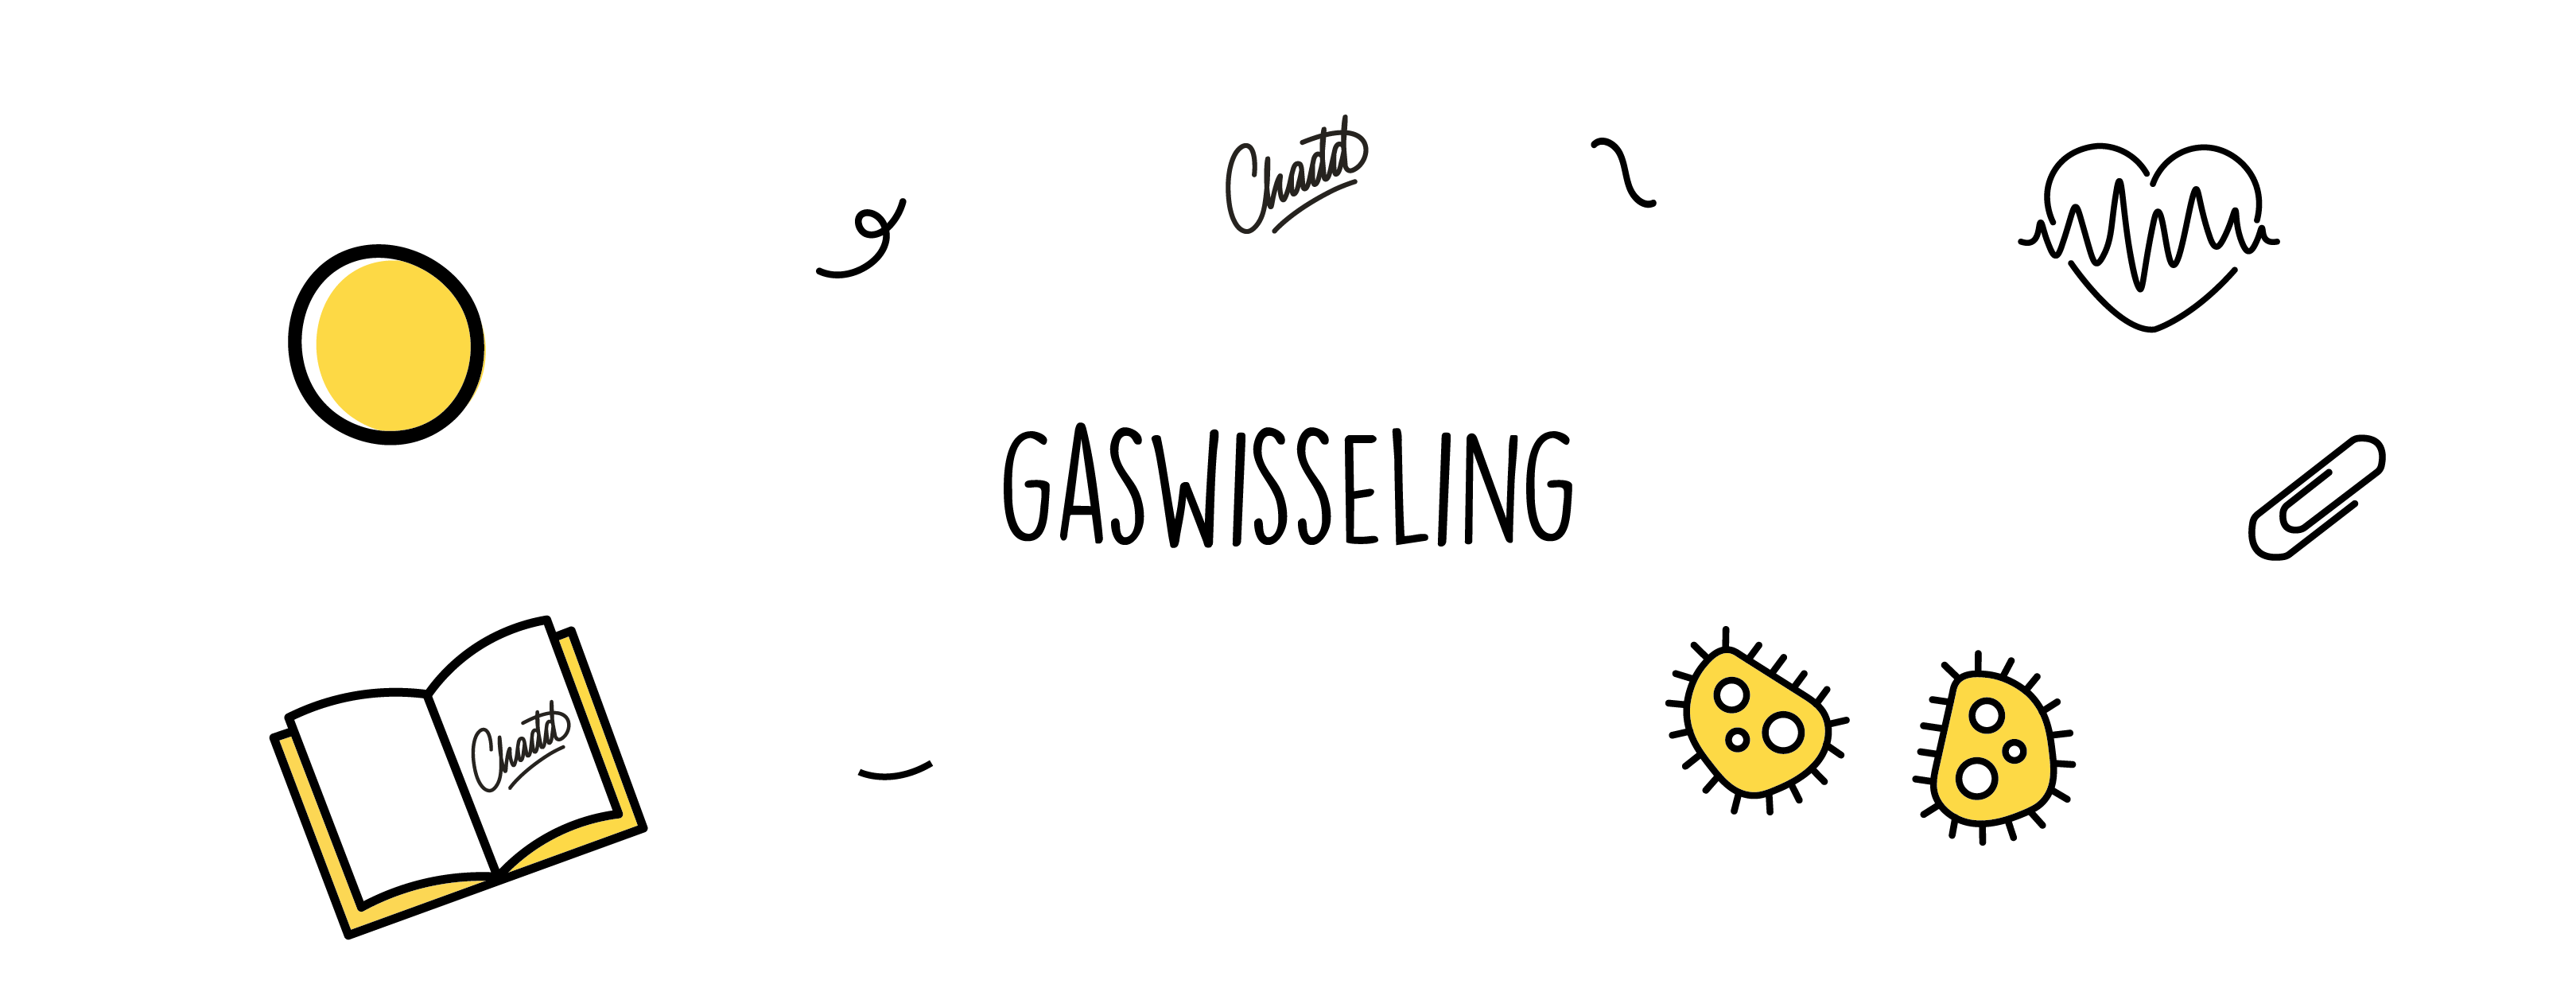 gaswisseling